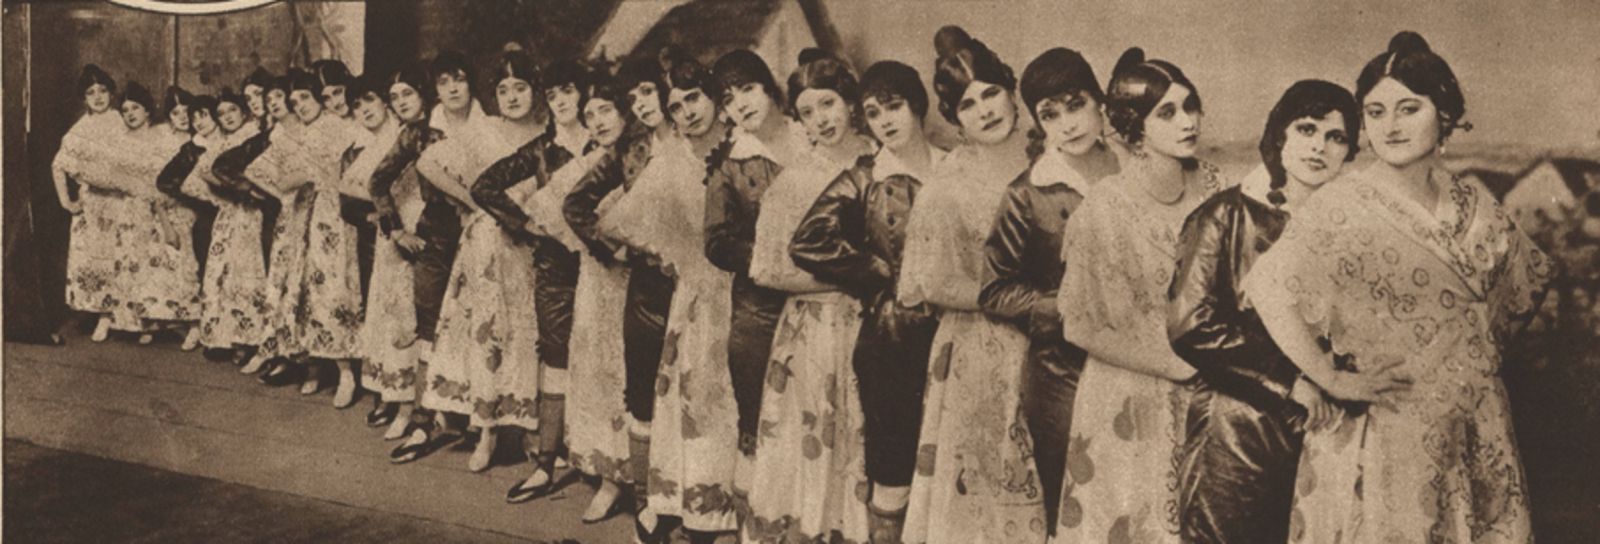 Una foto de las bailarinas de “The Land of Joy”, vestidas de valencianas,  en una información publicada en “The New York Times” en 1917.